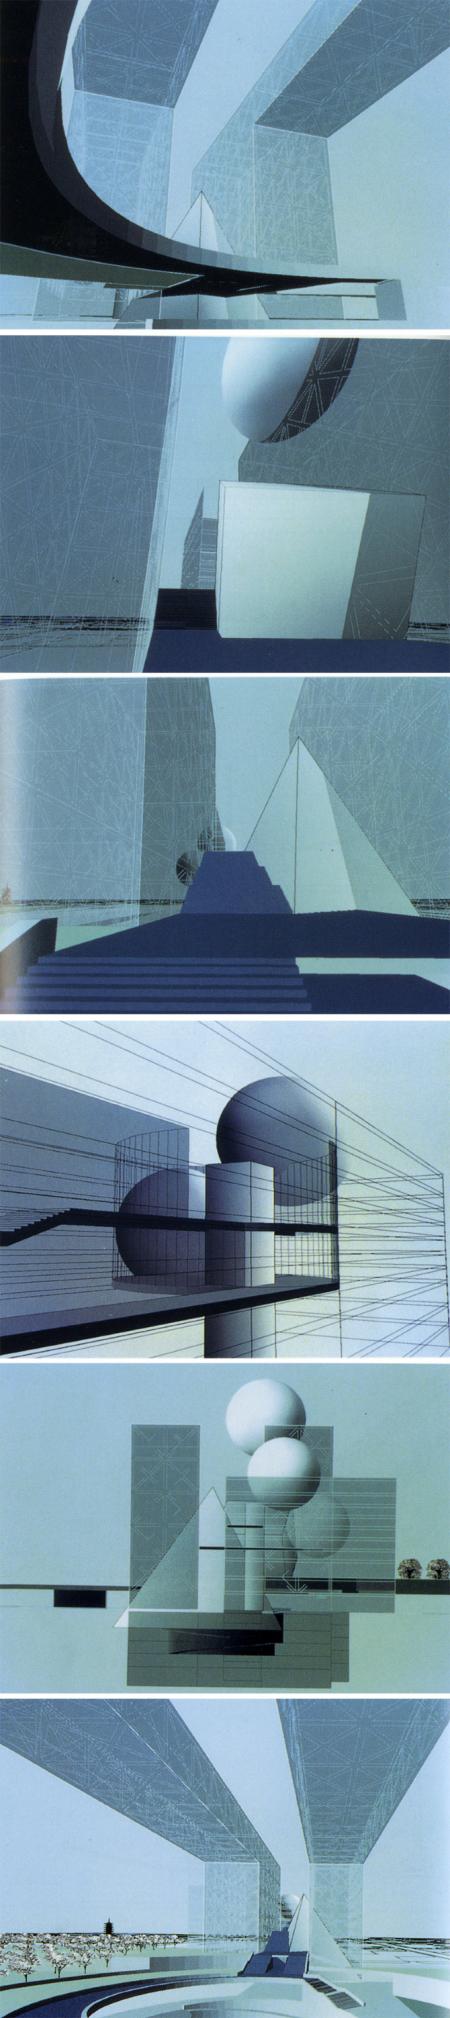 Tadao Ando. SD 333 June 1992, 20